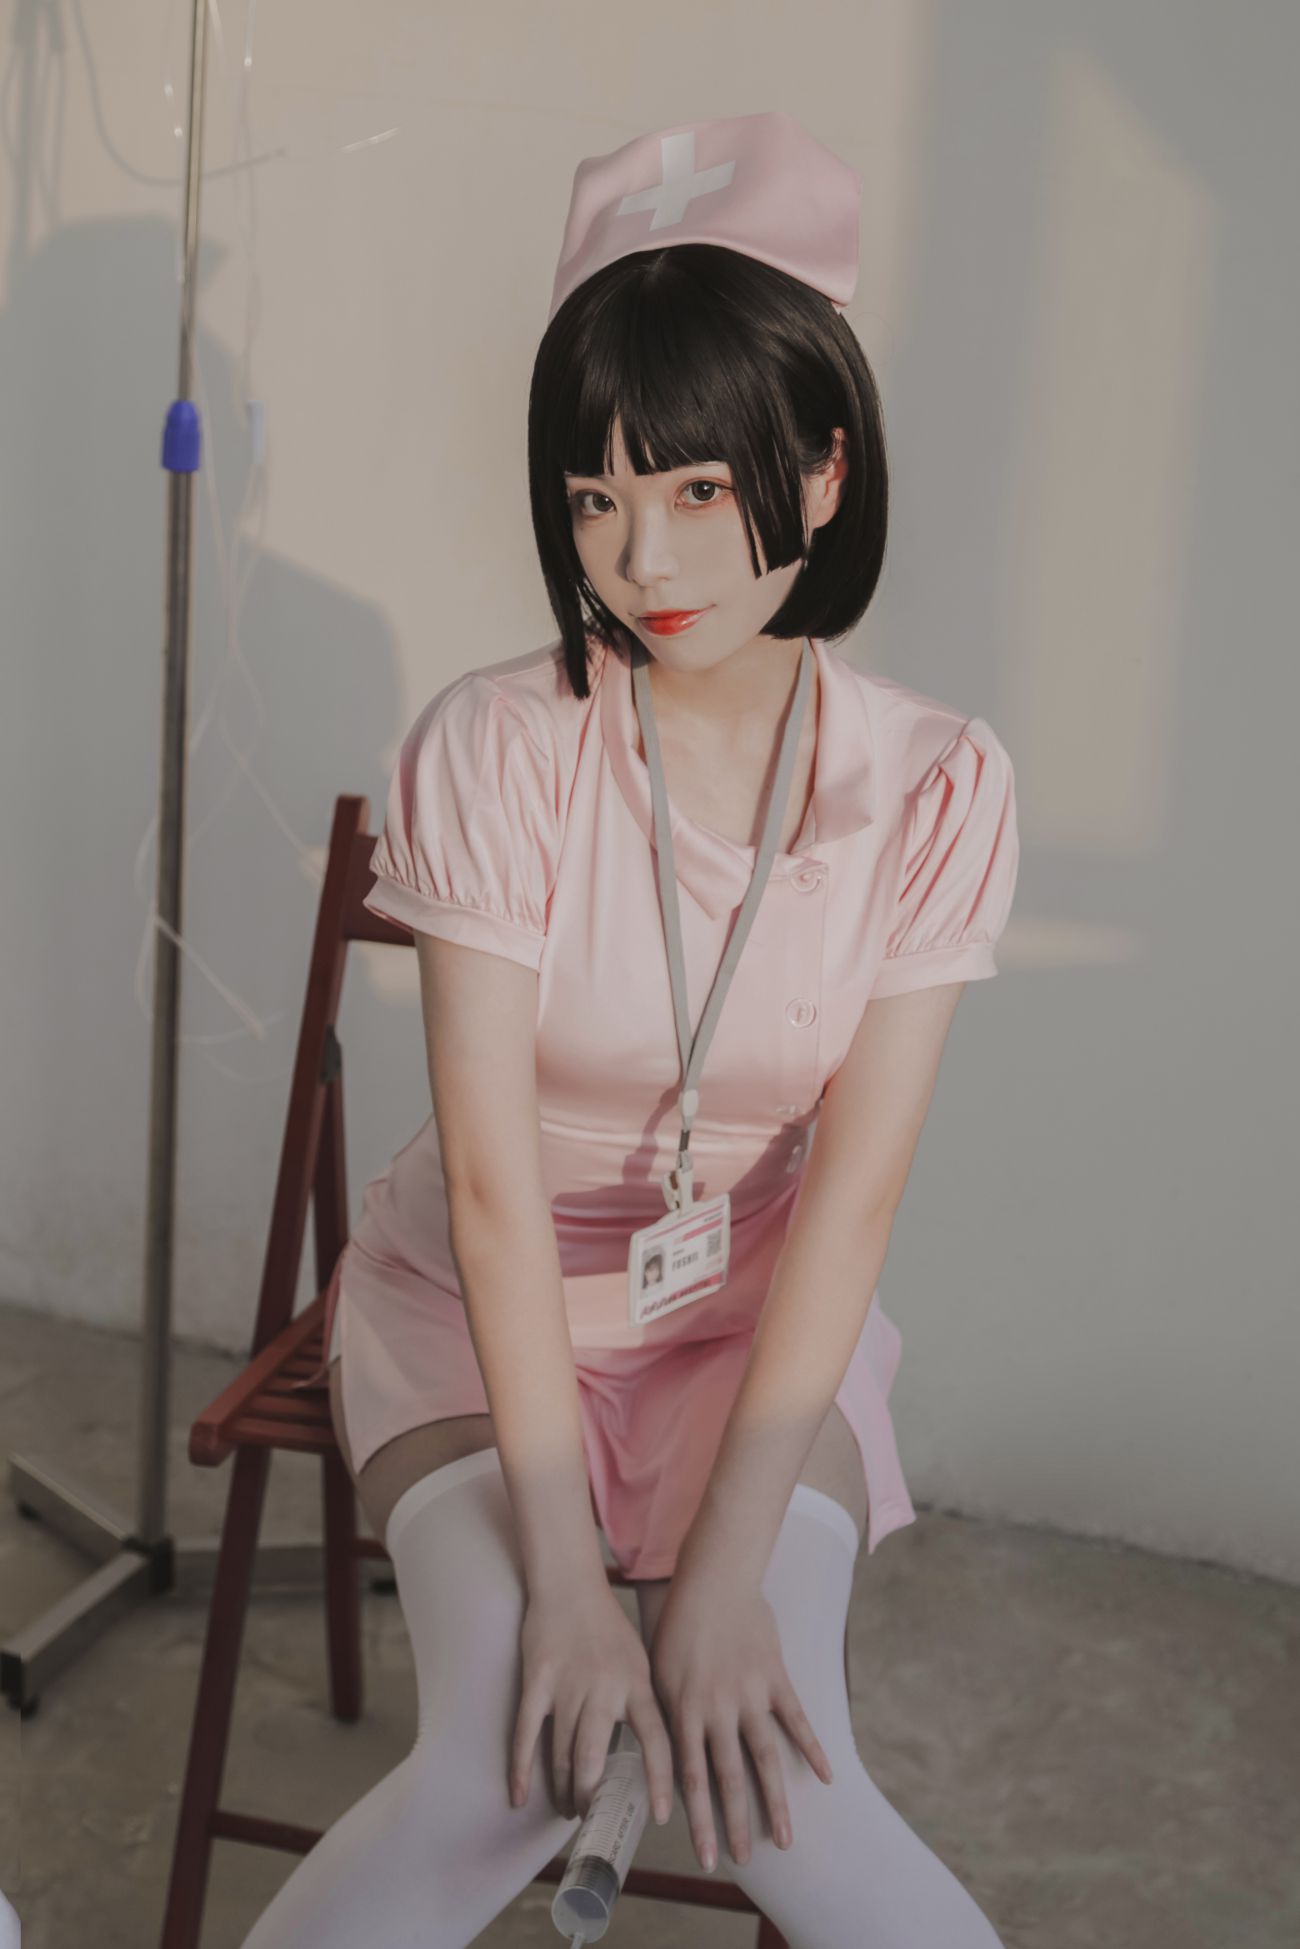 微博美少女Fushii海堂Cosplay性感写真护士 (12)